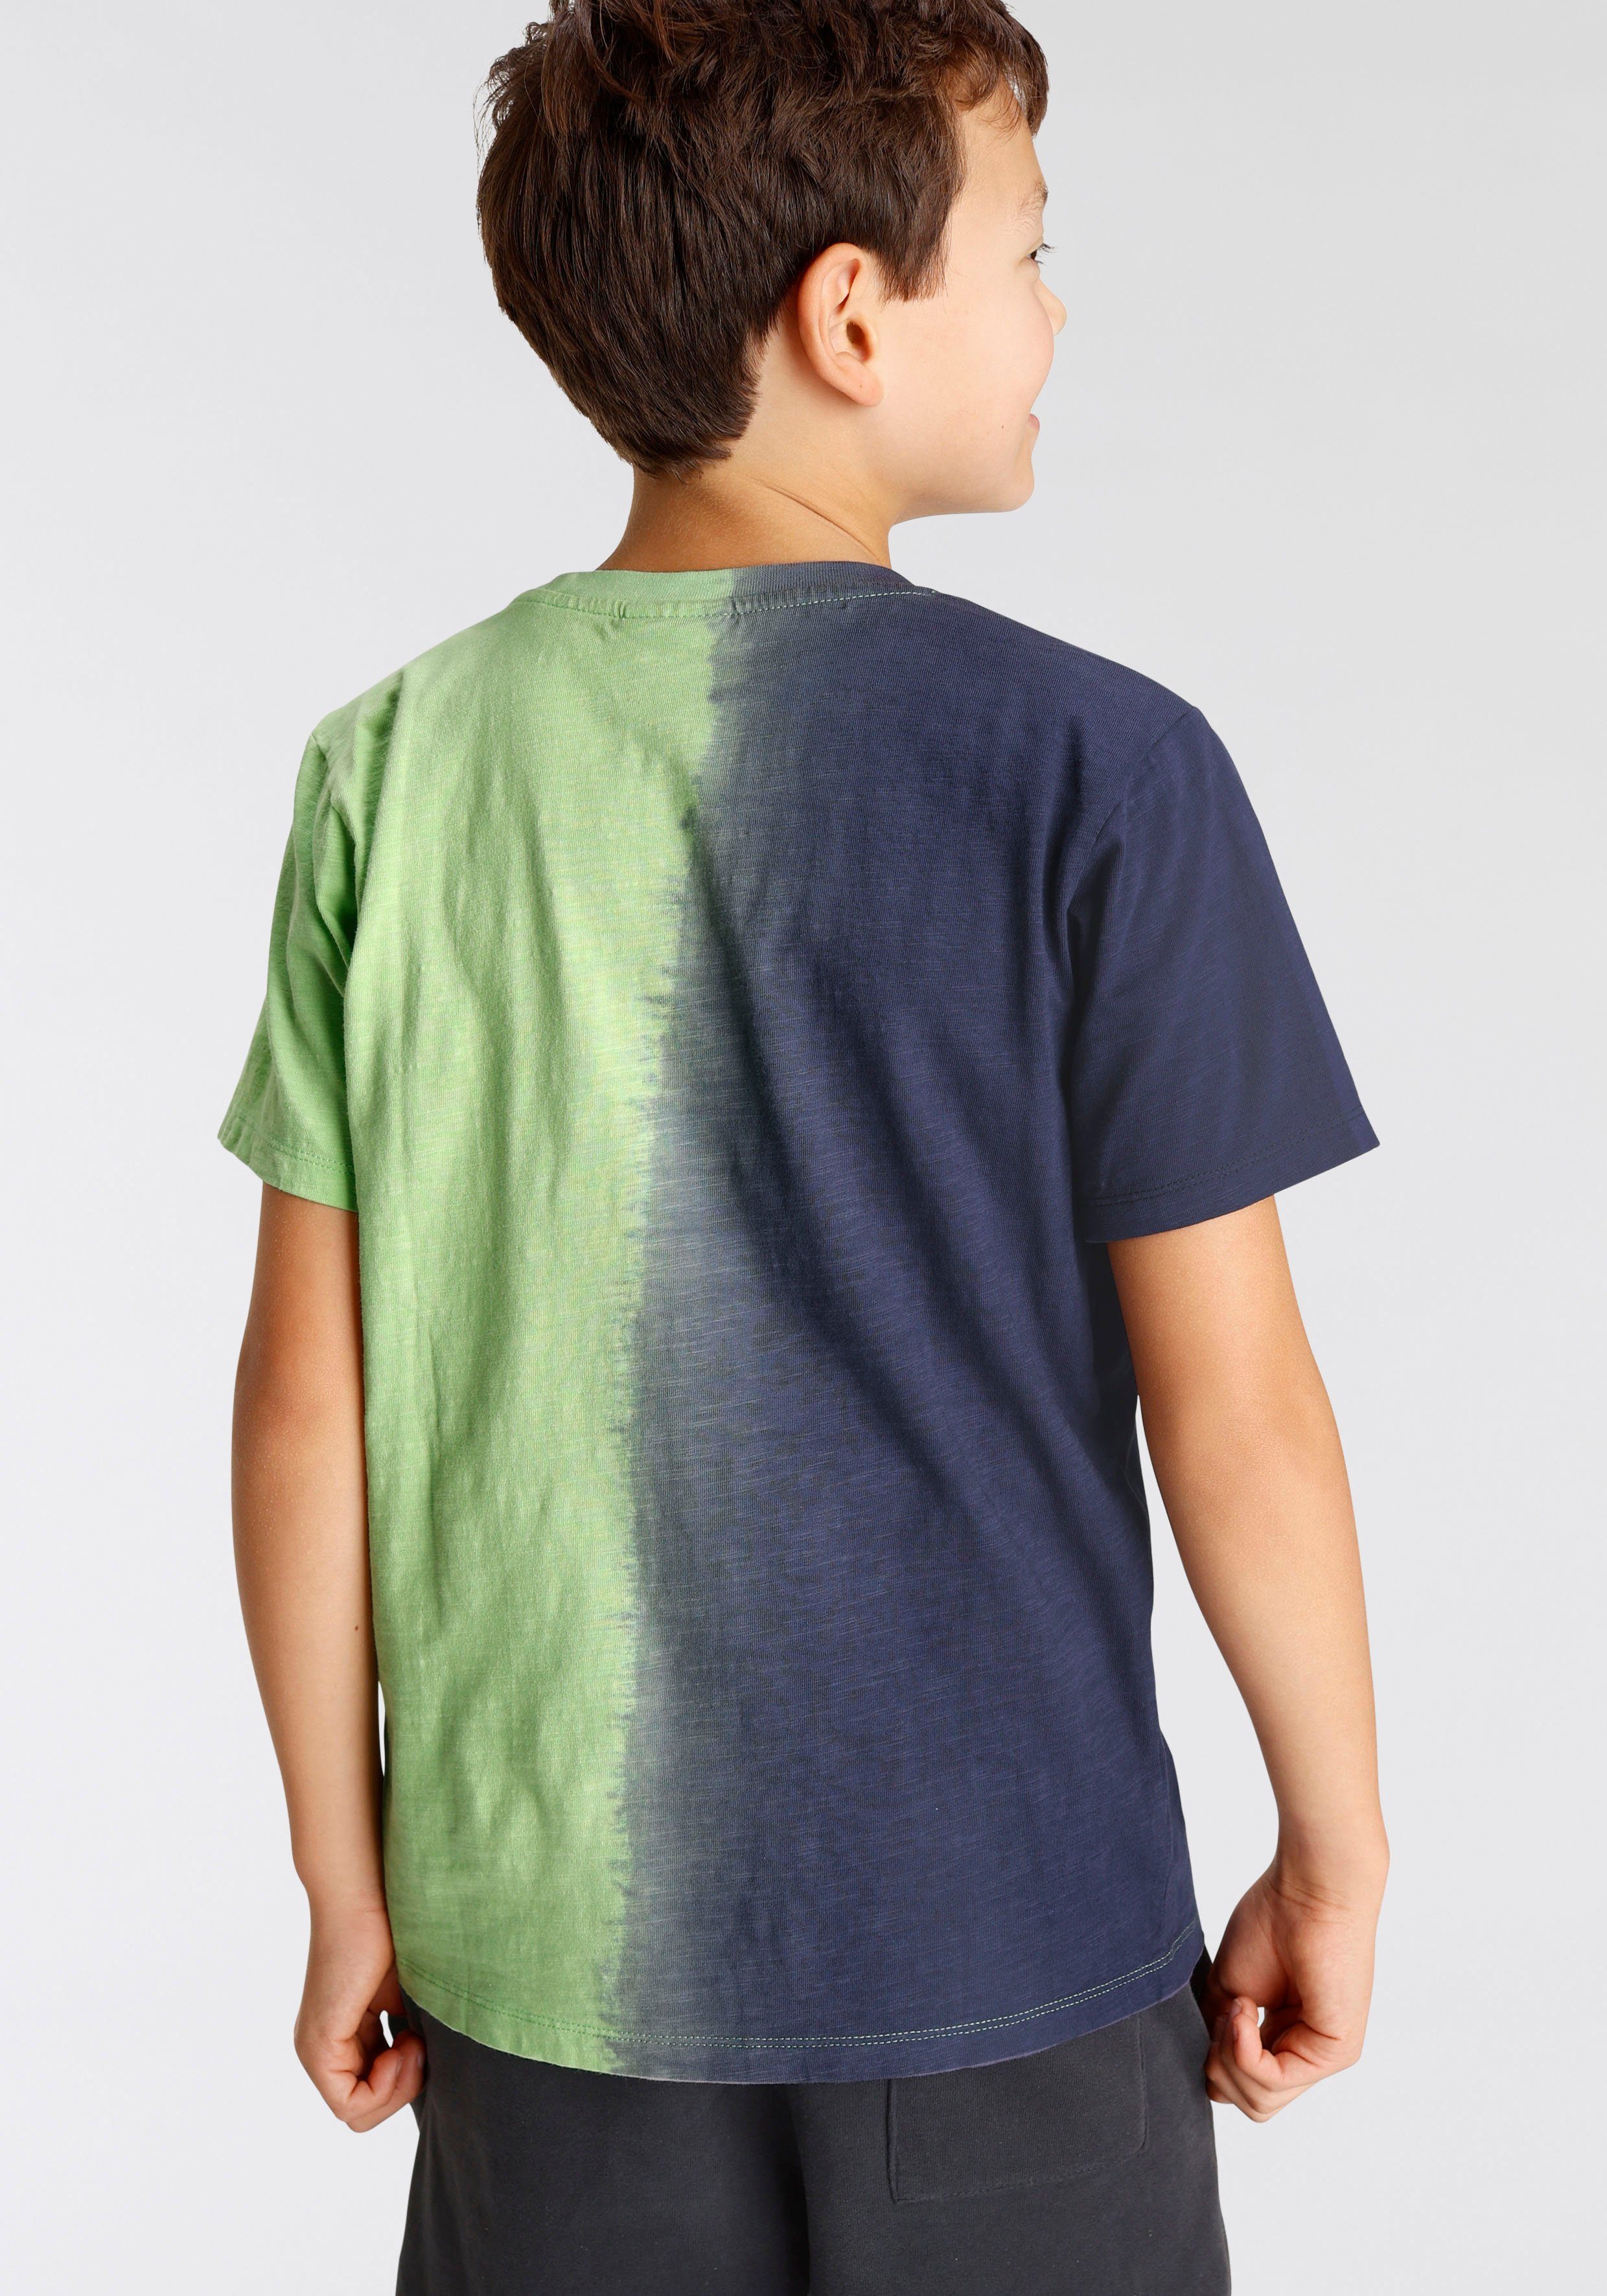 Chiemsee T-Shirt mit Farbverlauf Farbverlauf vertikalem